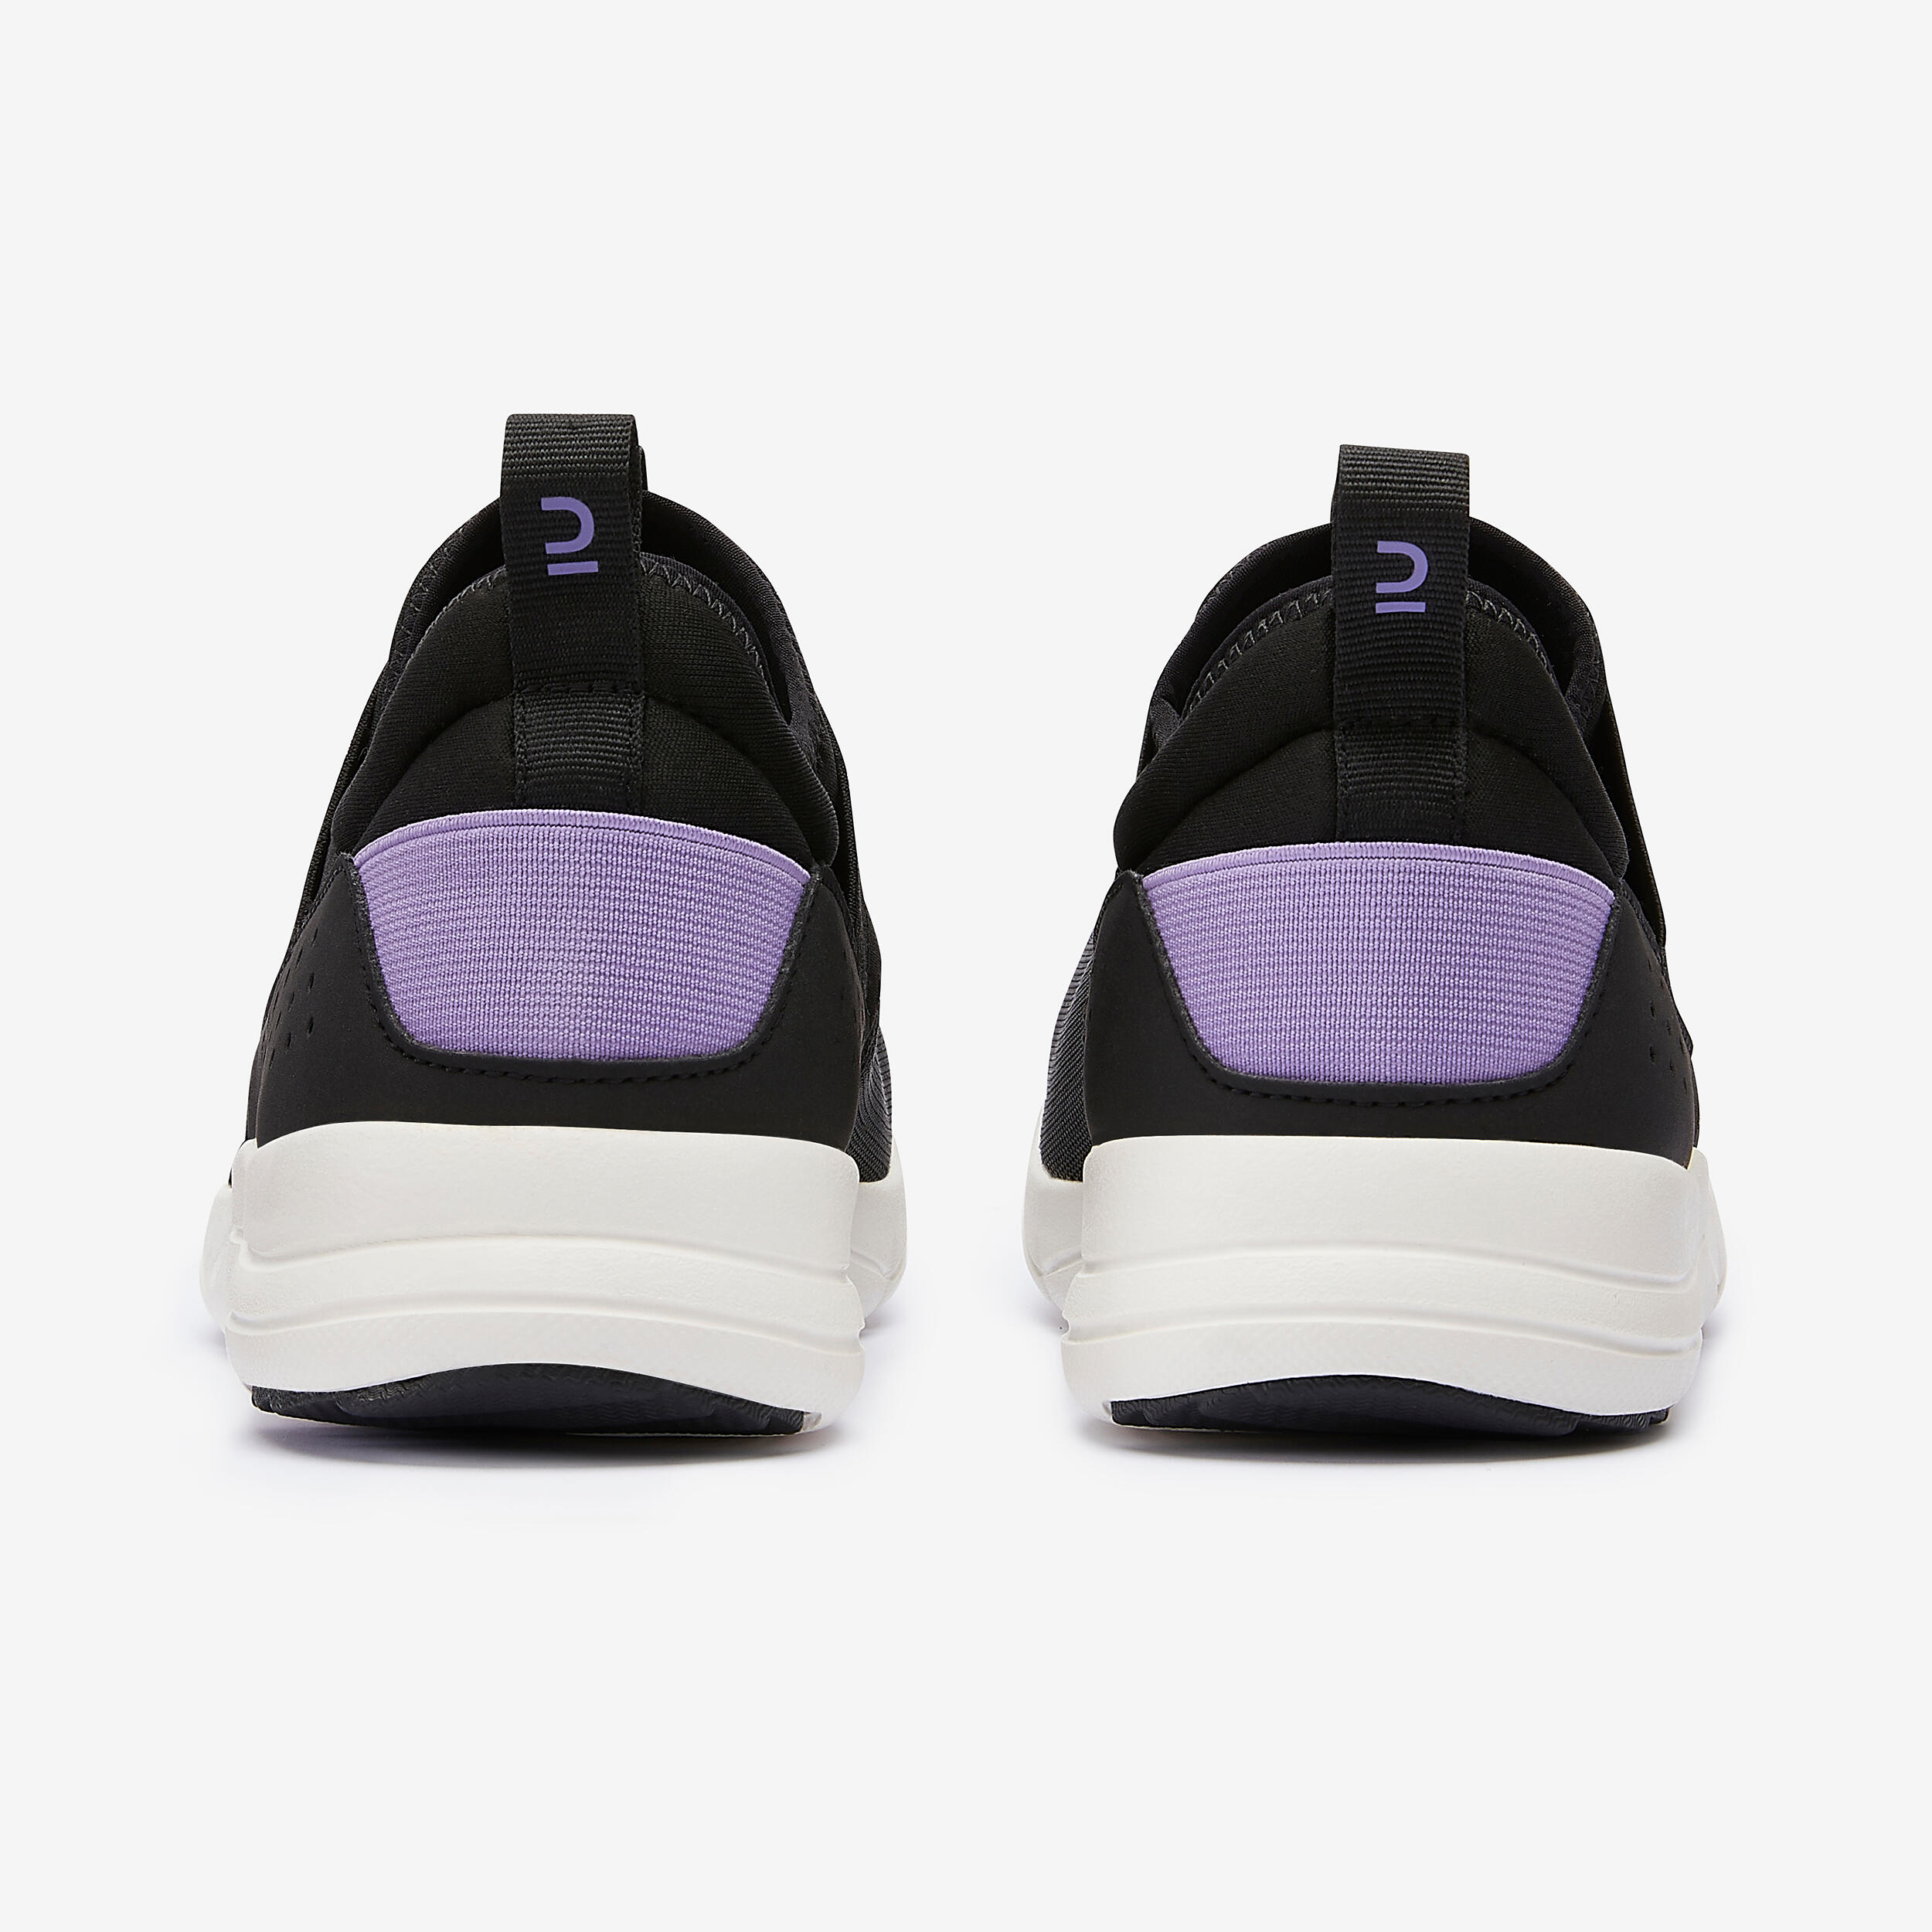 Women's Urban Walking Shoes - PW 160 Slip-On Black/Purple - DECATHLON